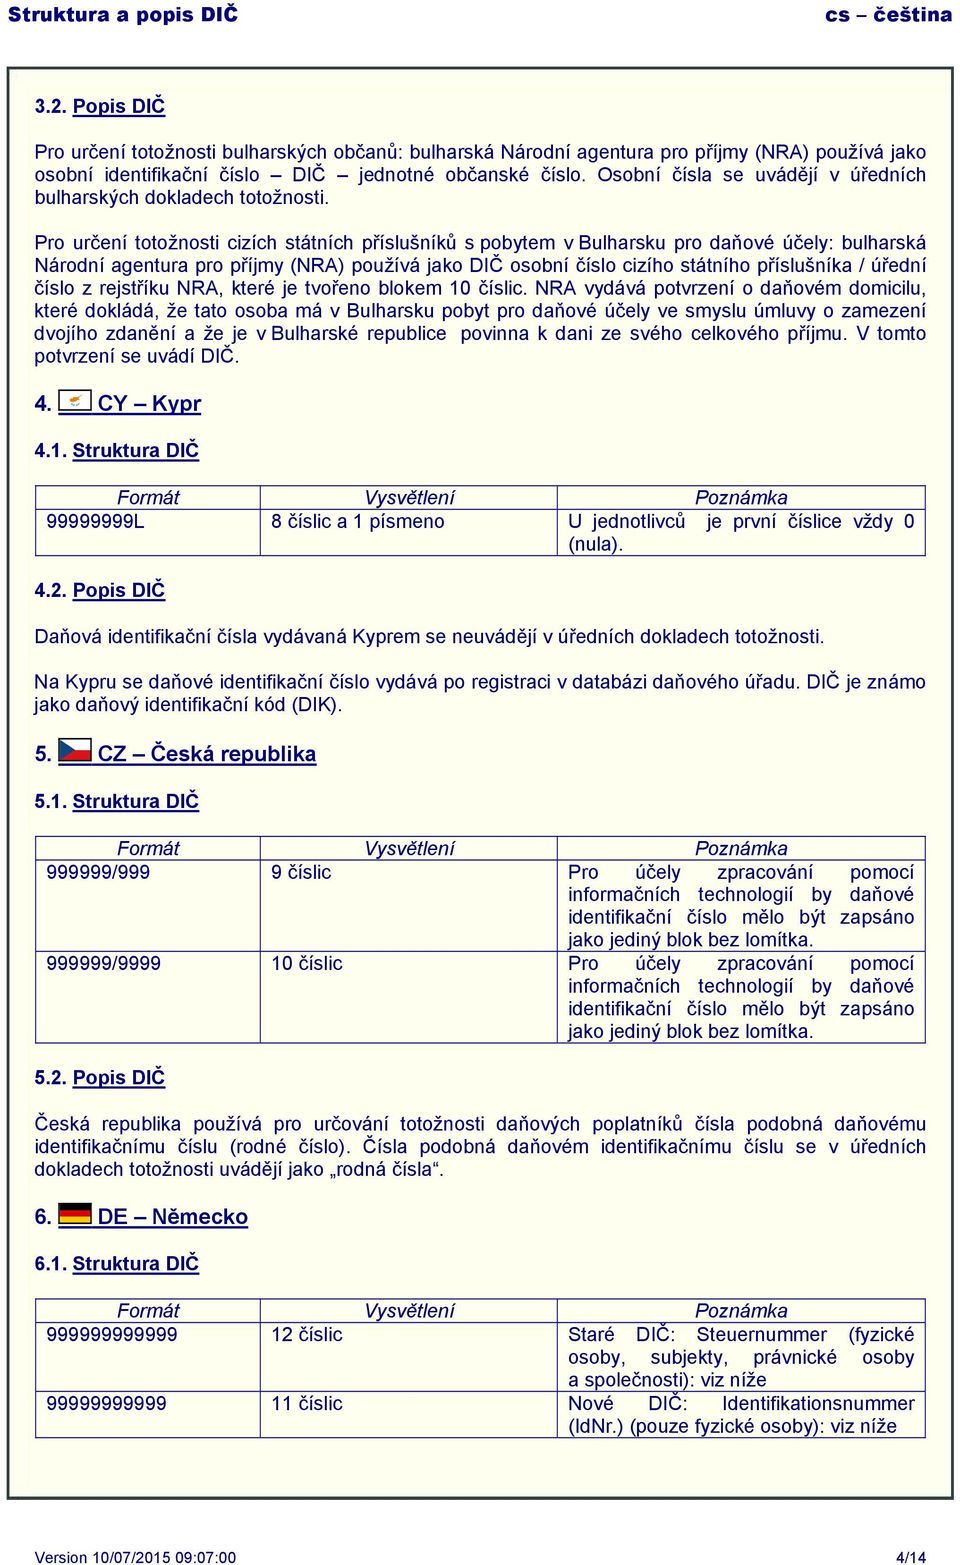 Pro určení totožnosti cizích státních příslušníků s pobytem v Bulharsku pro daňové účely: bulharská Národní agentura pro příjmy (NRA) používá jako DIČ osobní číslo cizího státního příslušníka /